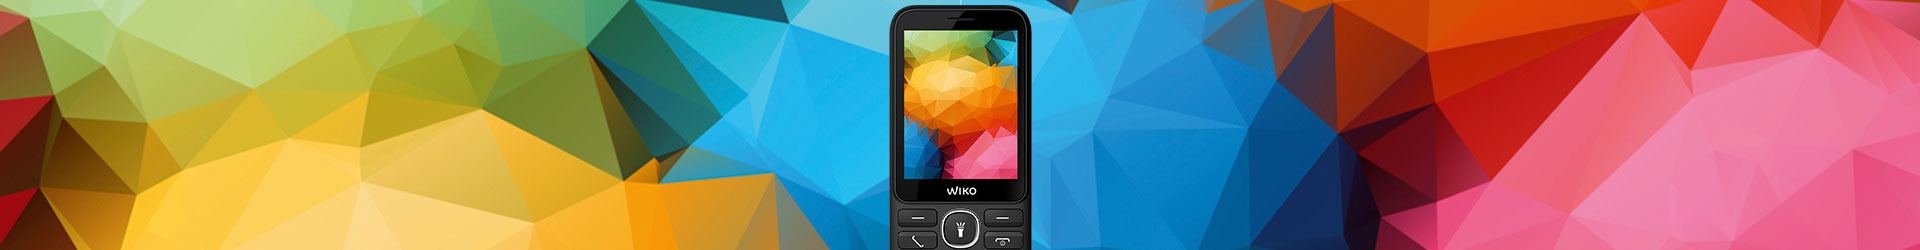 Features Phones Wiko